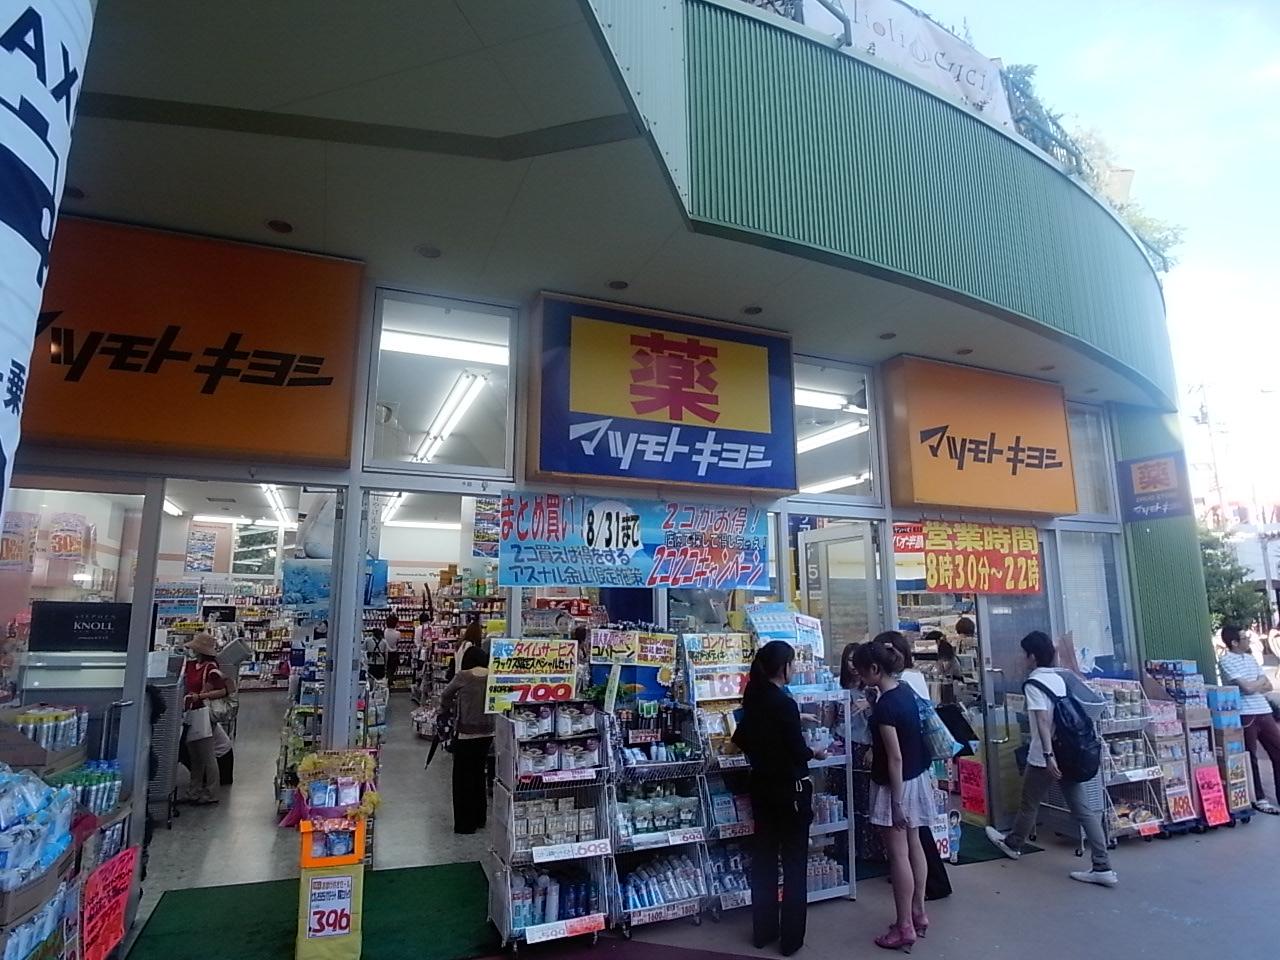 Dorakkusutoa. Matsumotokiyoshi Arsenal Jinshan shop 696m until (drugstore)